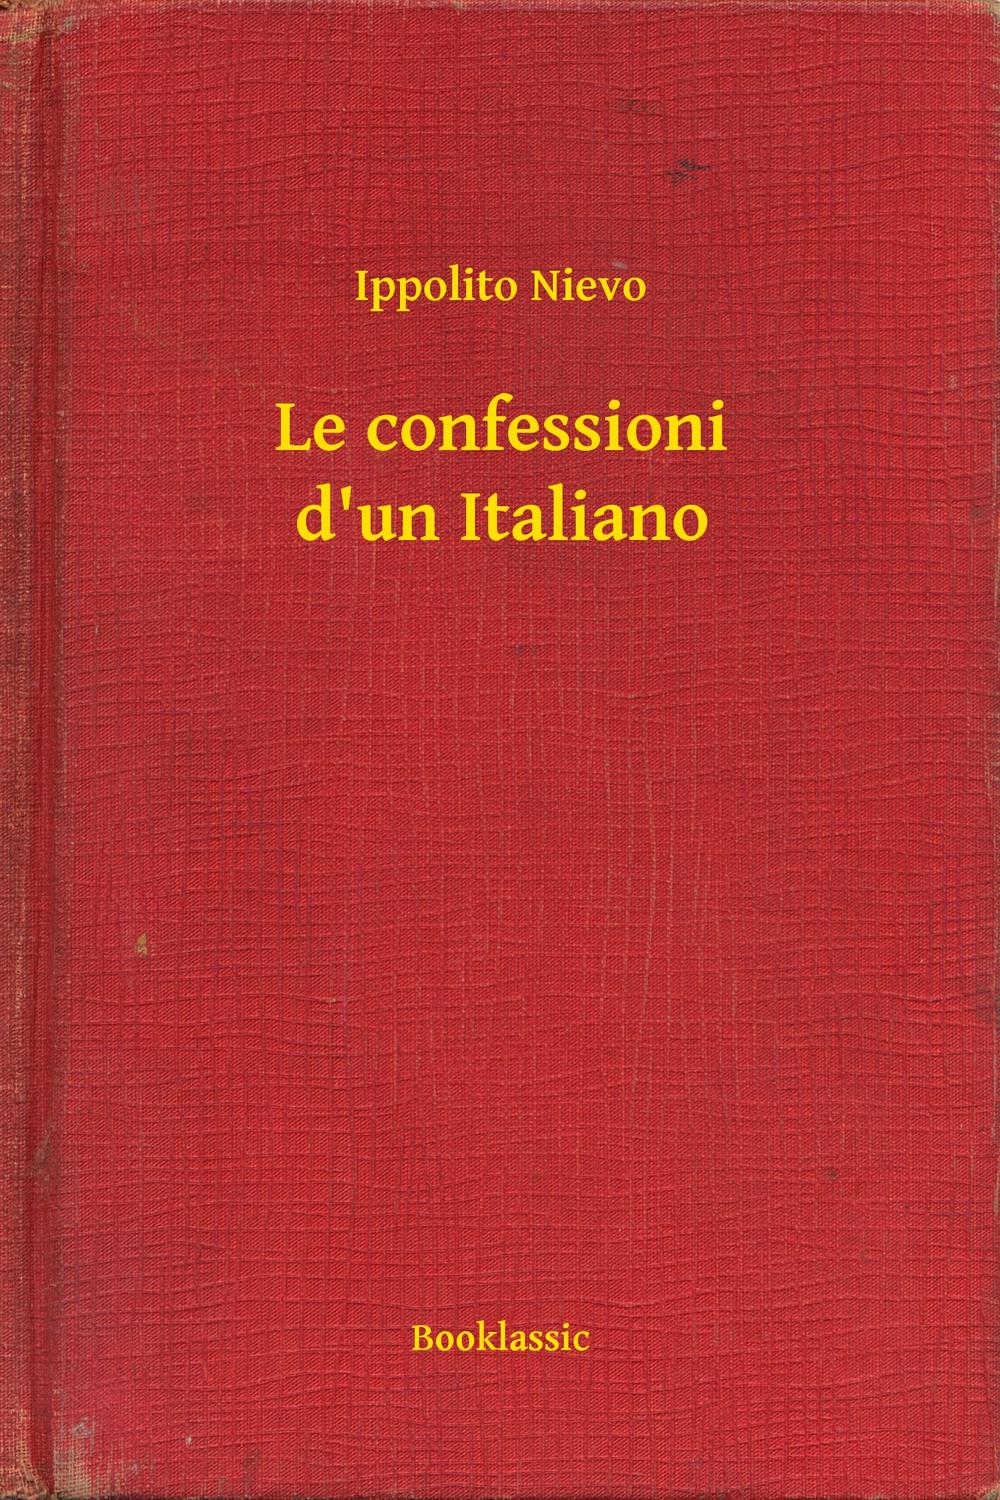 Le confessioni d'un Italiano - Ippolito Nievo